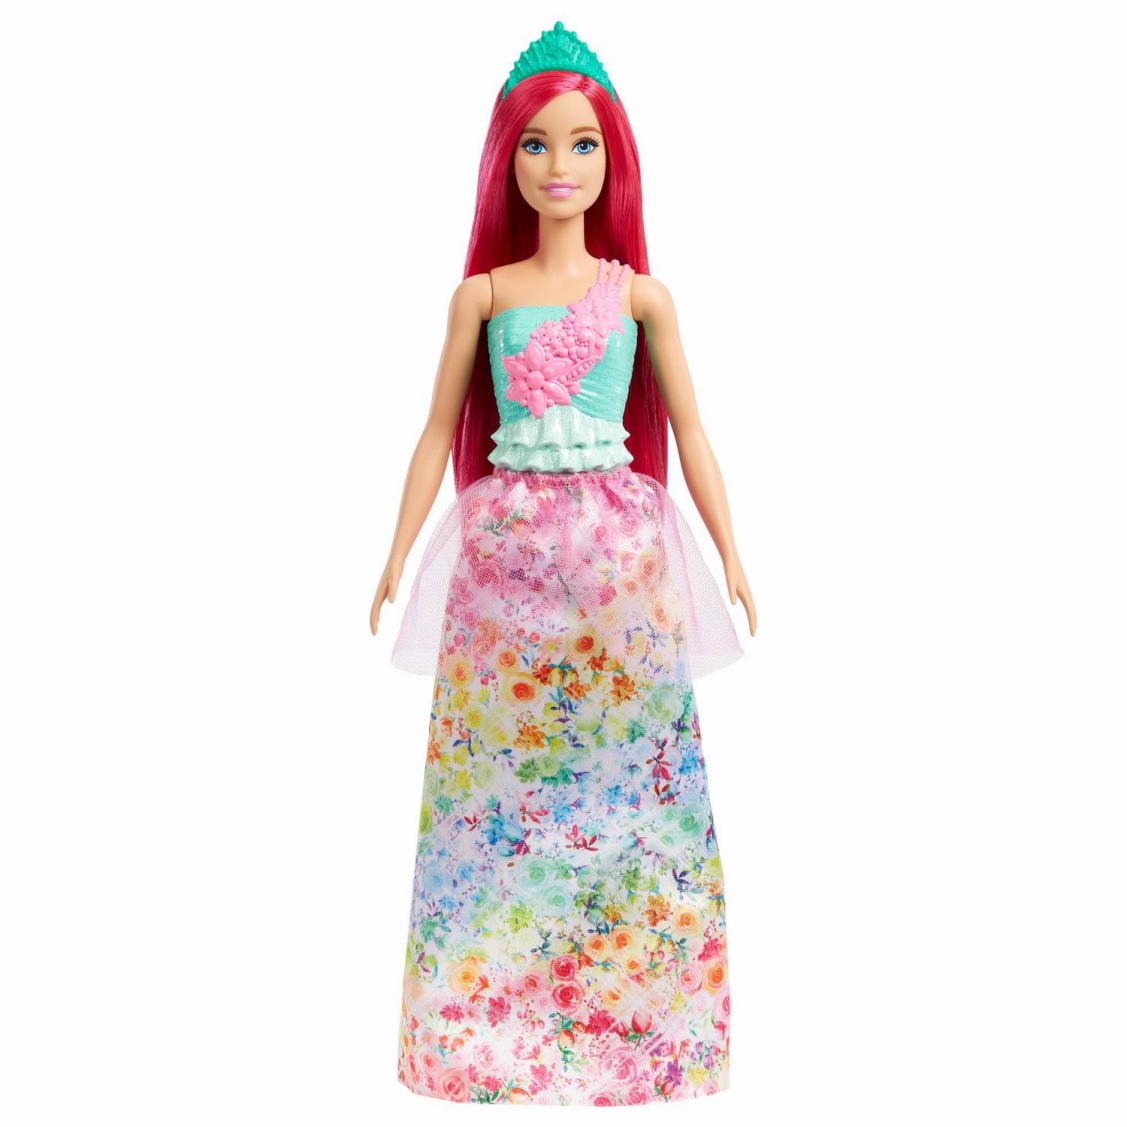 Кукла Mattel Barbie Dreamtopia Принцесса с красными волосами